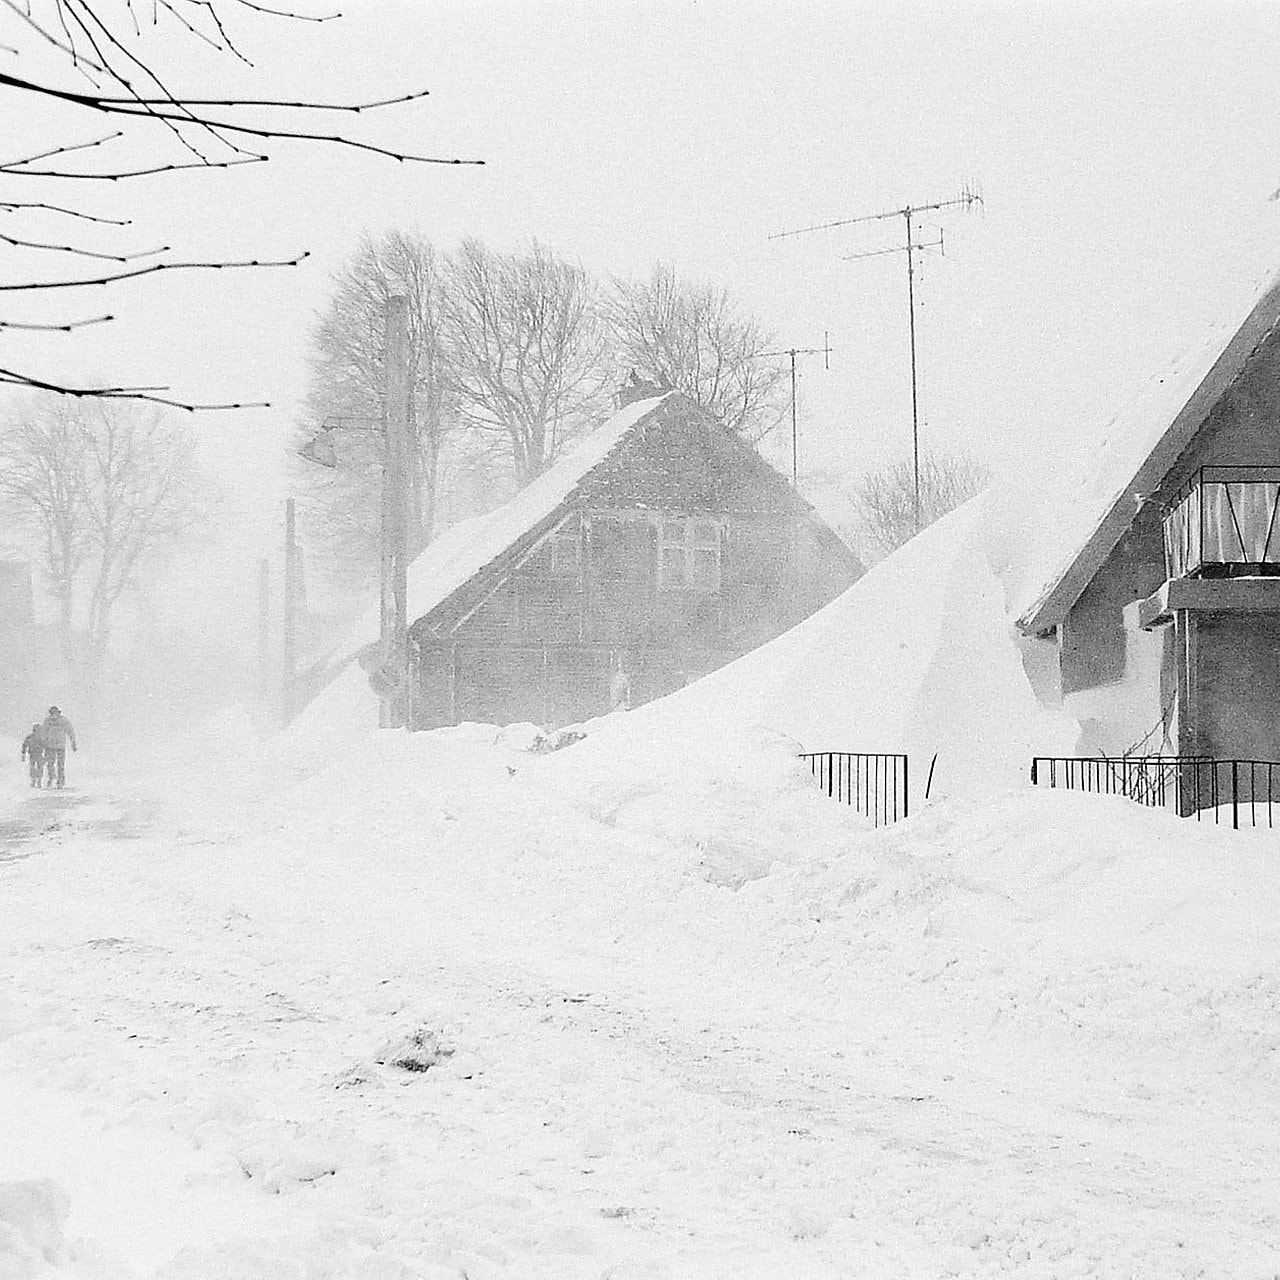 Die Schneekatastrophe von 1978/79: Als der Osten im Schnee versank